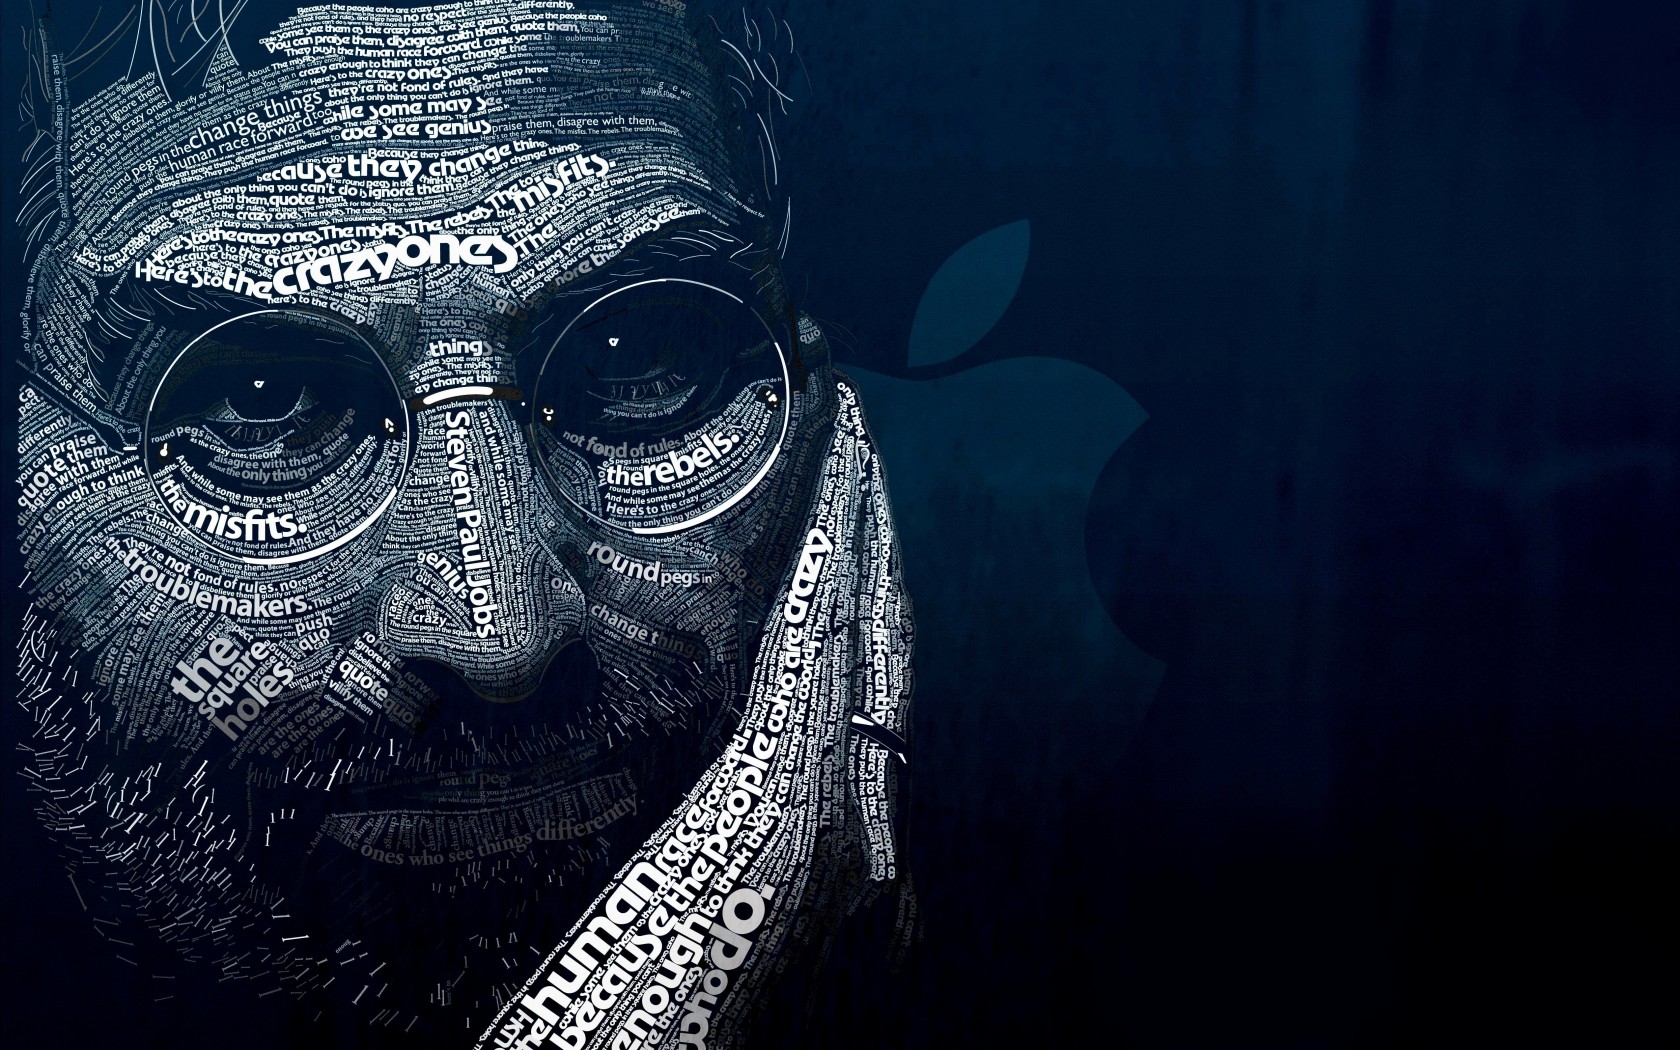 Steve Jobs Typographic Portrait Wallpaper for Desktop 1680x1050